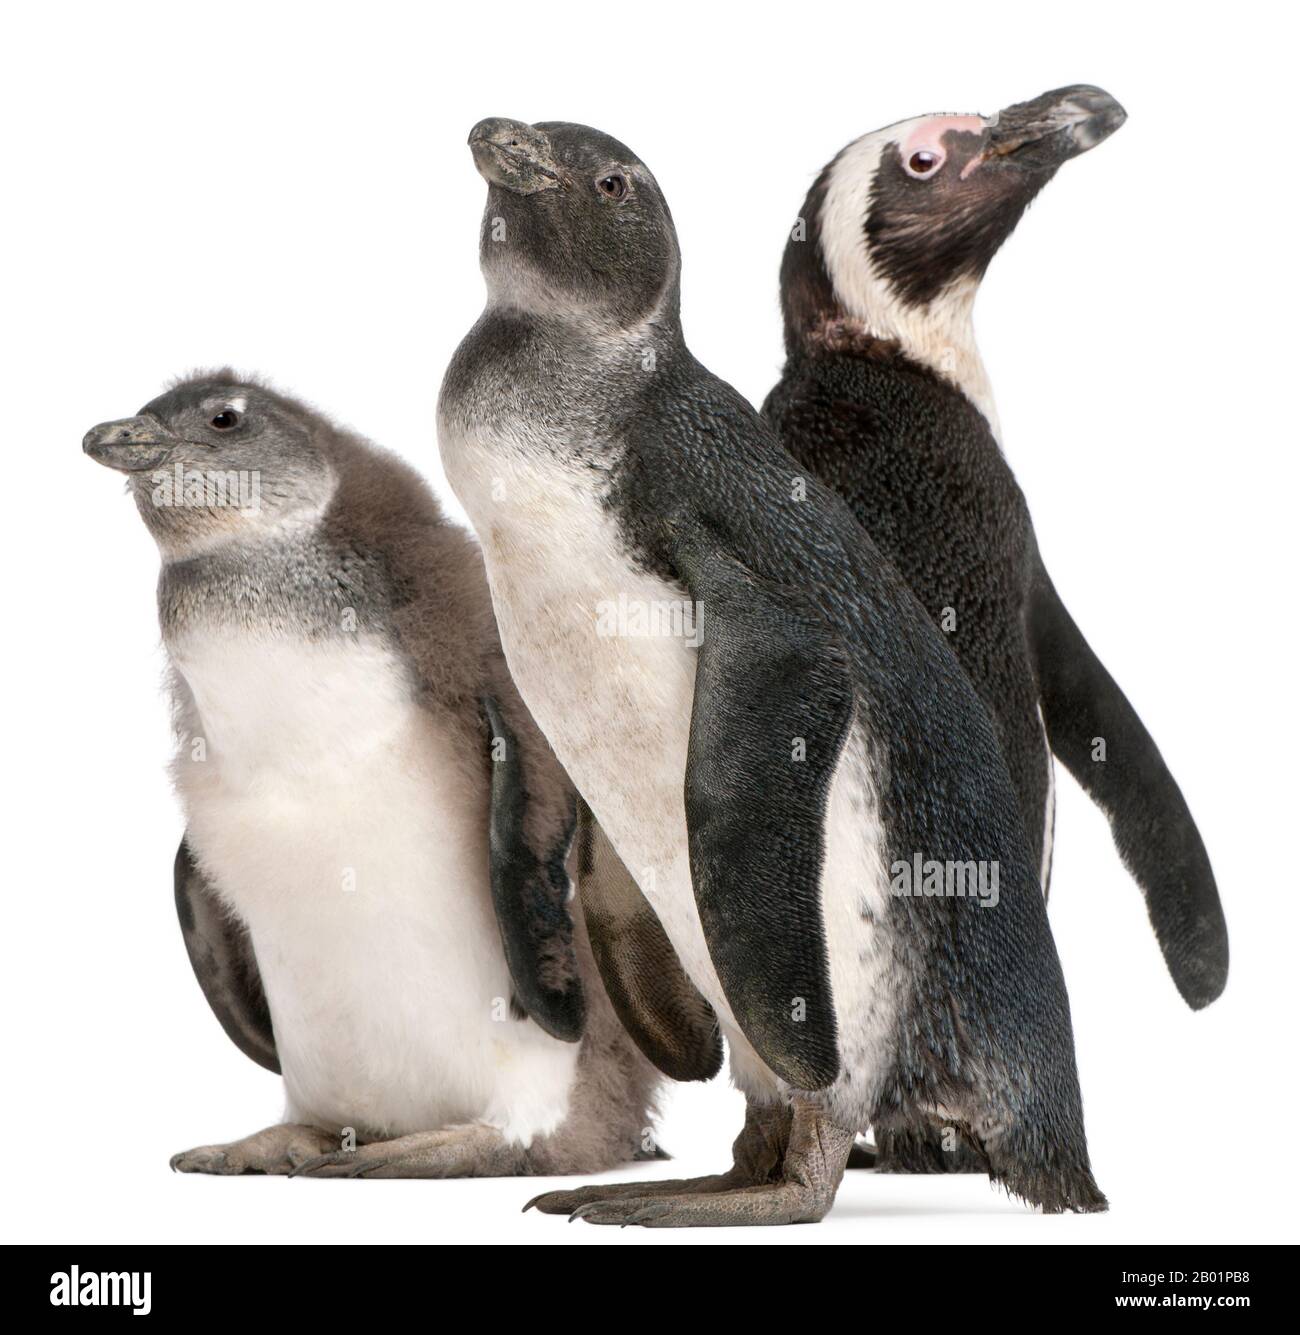 Afrikanische Pinguine, Spheniscus demersus, vor weißem Hintergrund Stockfoto